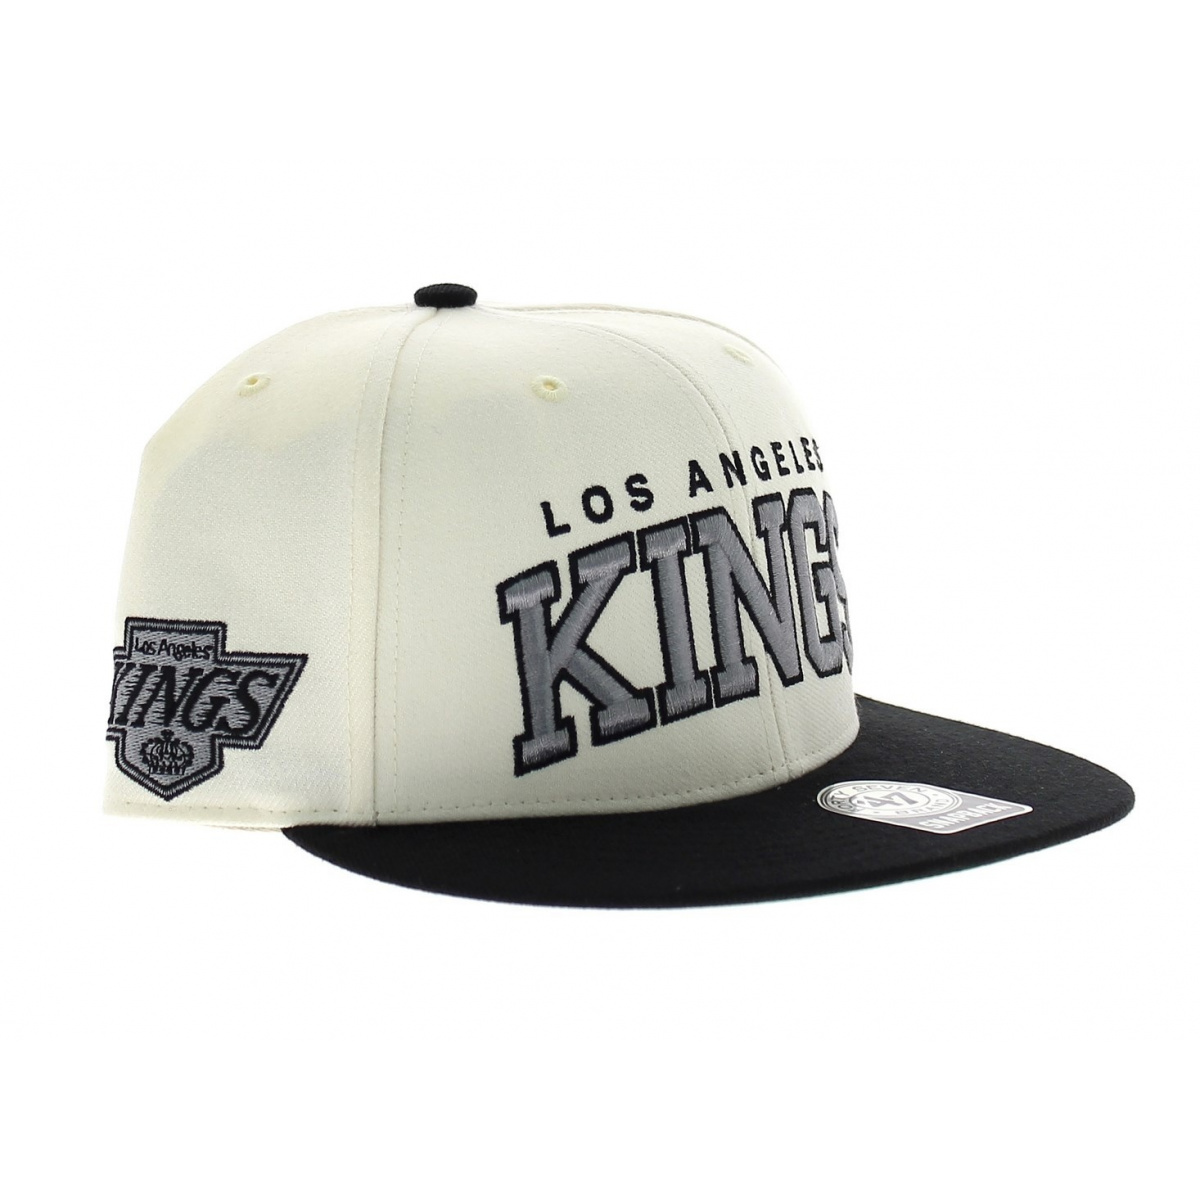 la kings hat